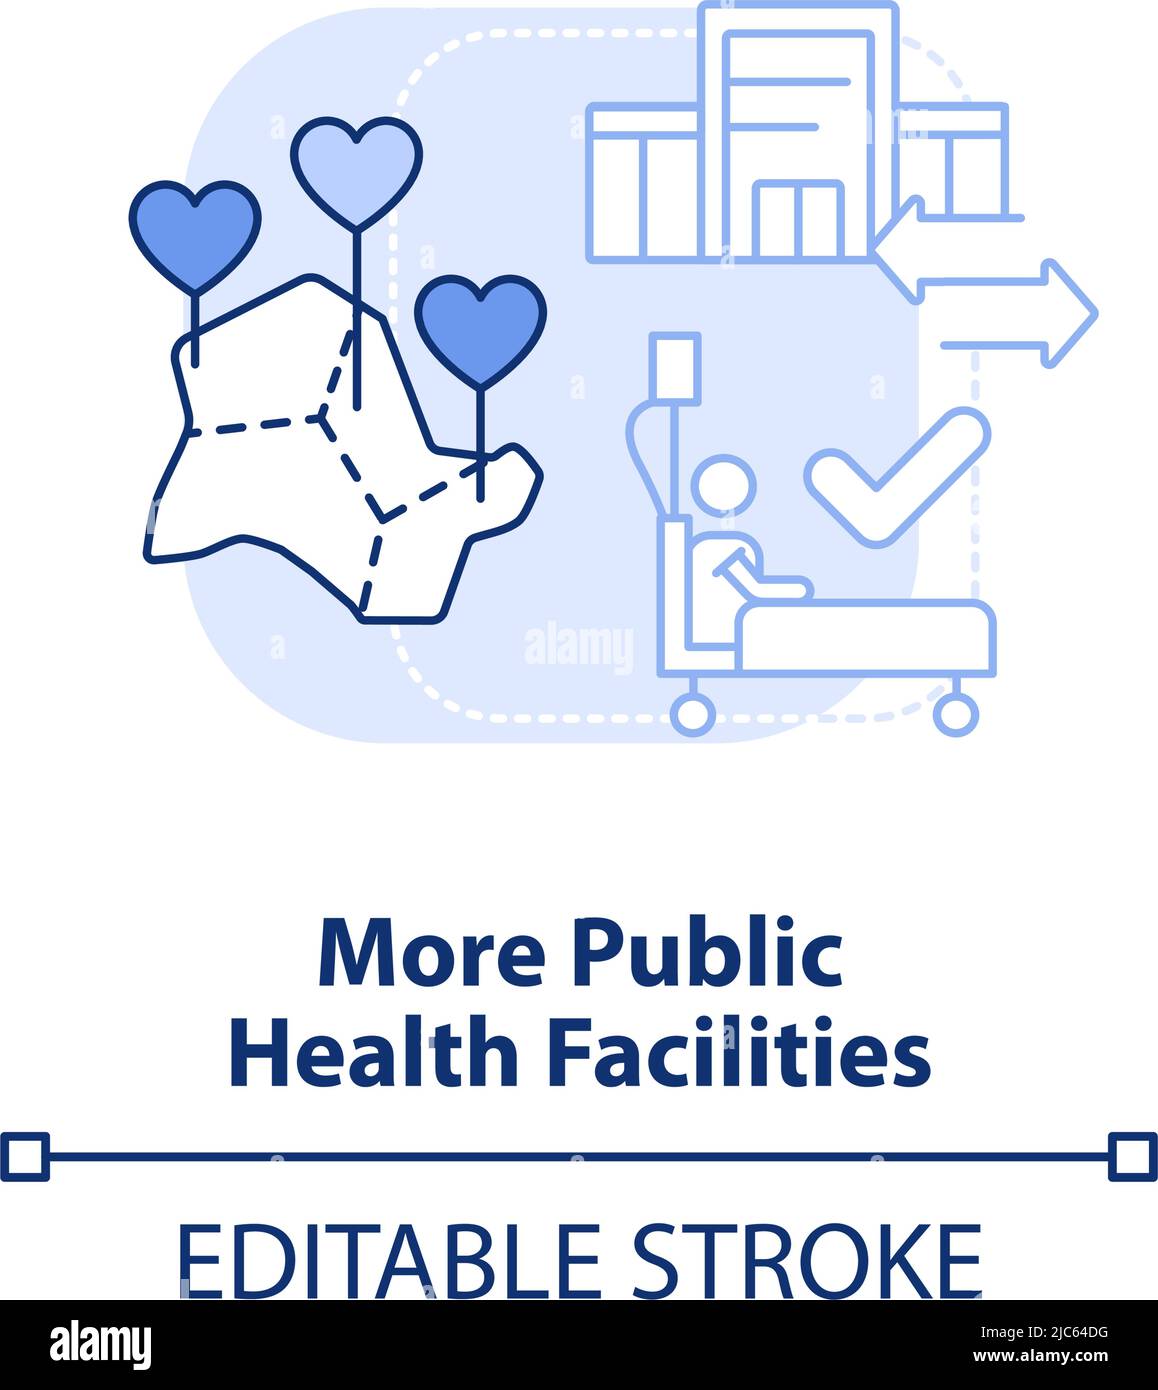 Más instalaciones de salud pública icono de concepto azul claro Ilustración del Vector